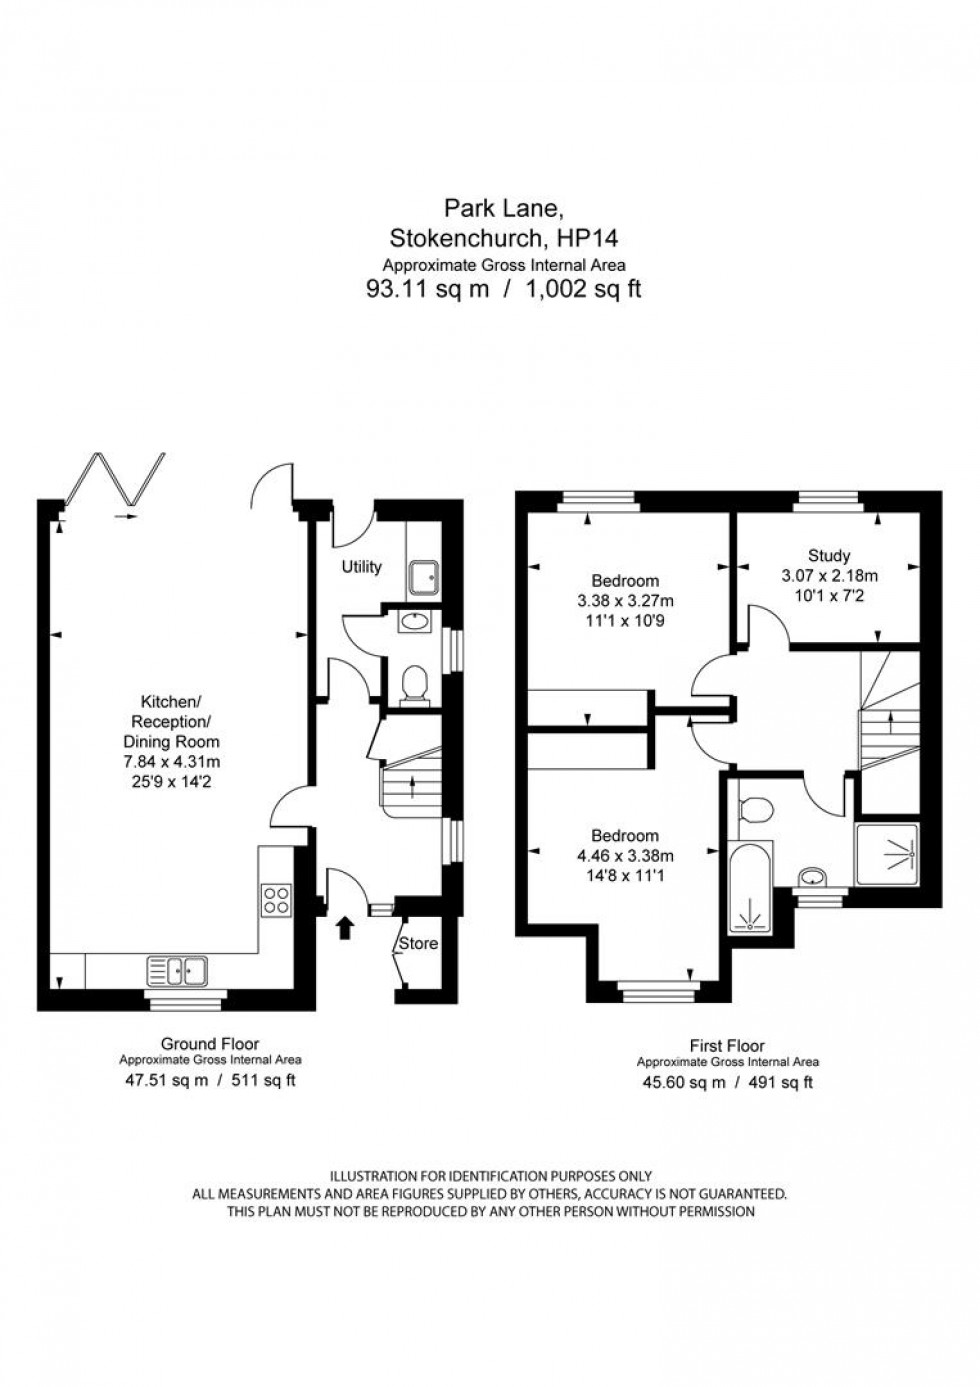 Floorplan for Plot 3, Park Lane, Stokenchurch, HP14 3TQ